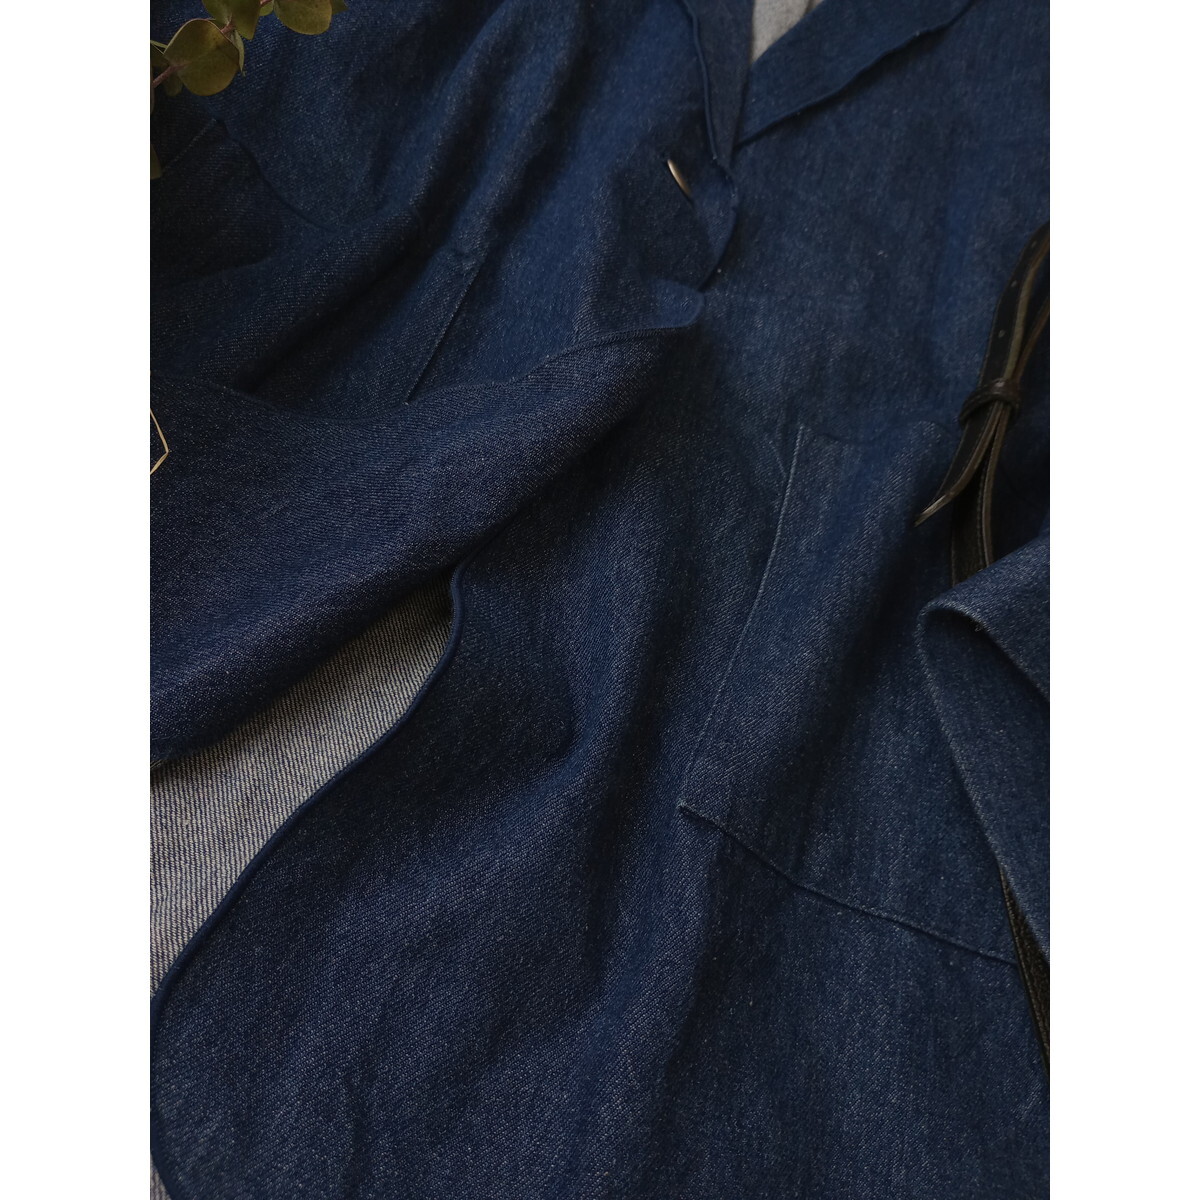 Kastane カスタネ「適度なゆるさとおしゃれ感。」オーバーサイズ ビックシルエット デニム ジャケット 羽織り (49K+0618)の画像4